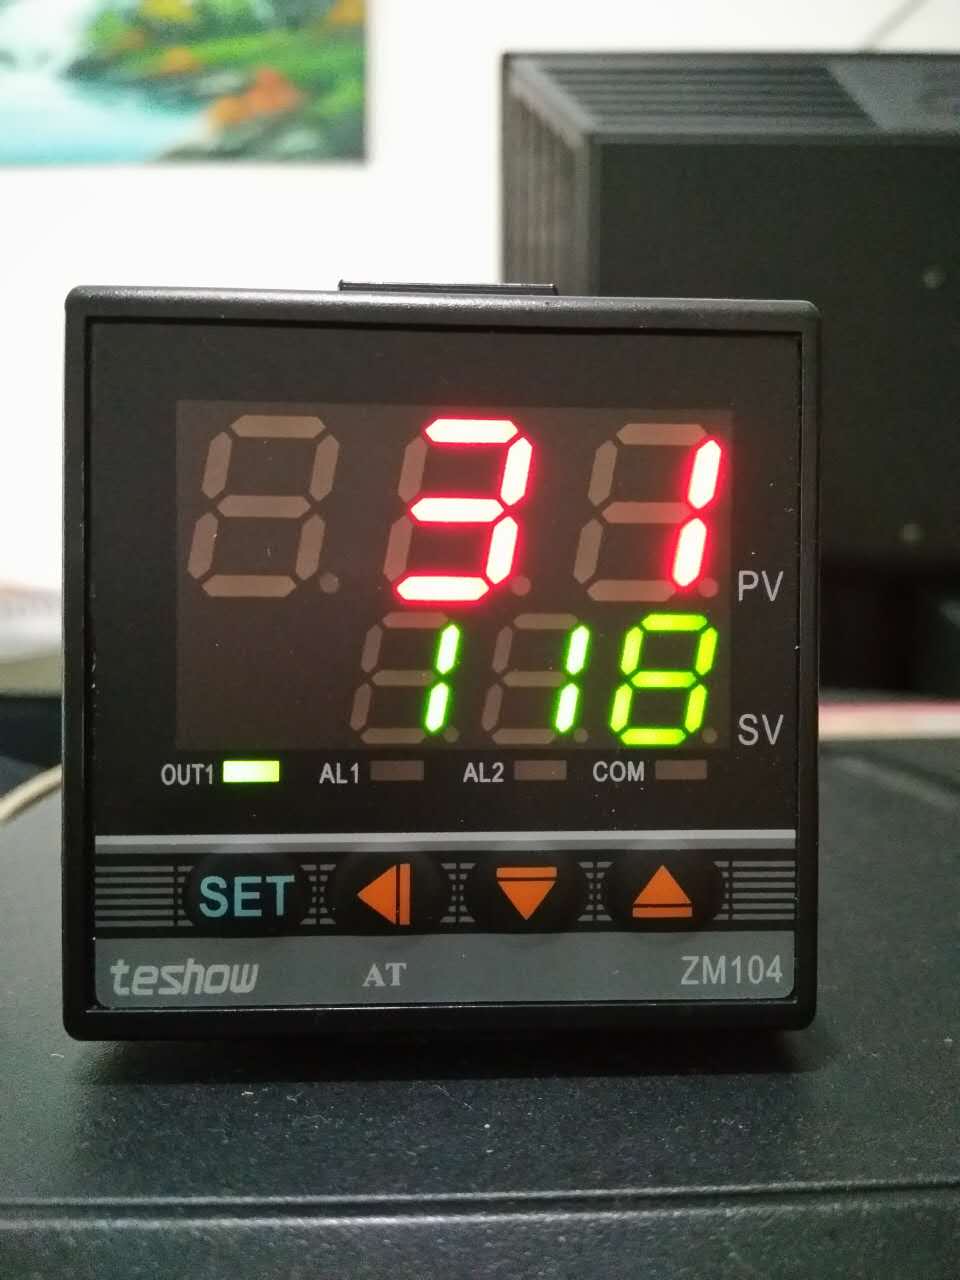 液晶显示温控器液晶显示温控器哪个品牌好、液晶显示温控器厂家直销价格、广东液晶显示温控器